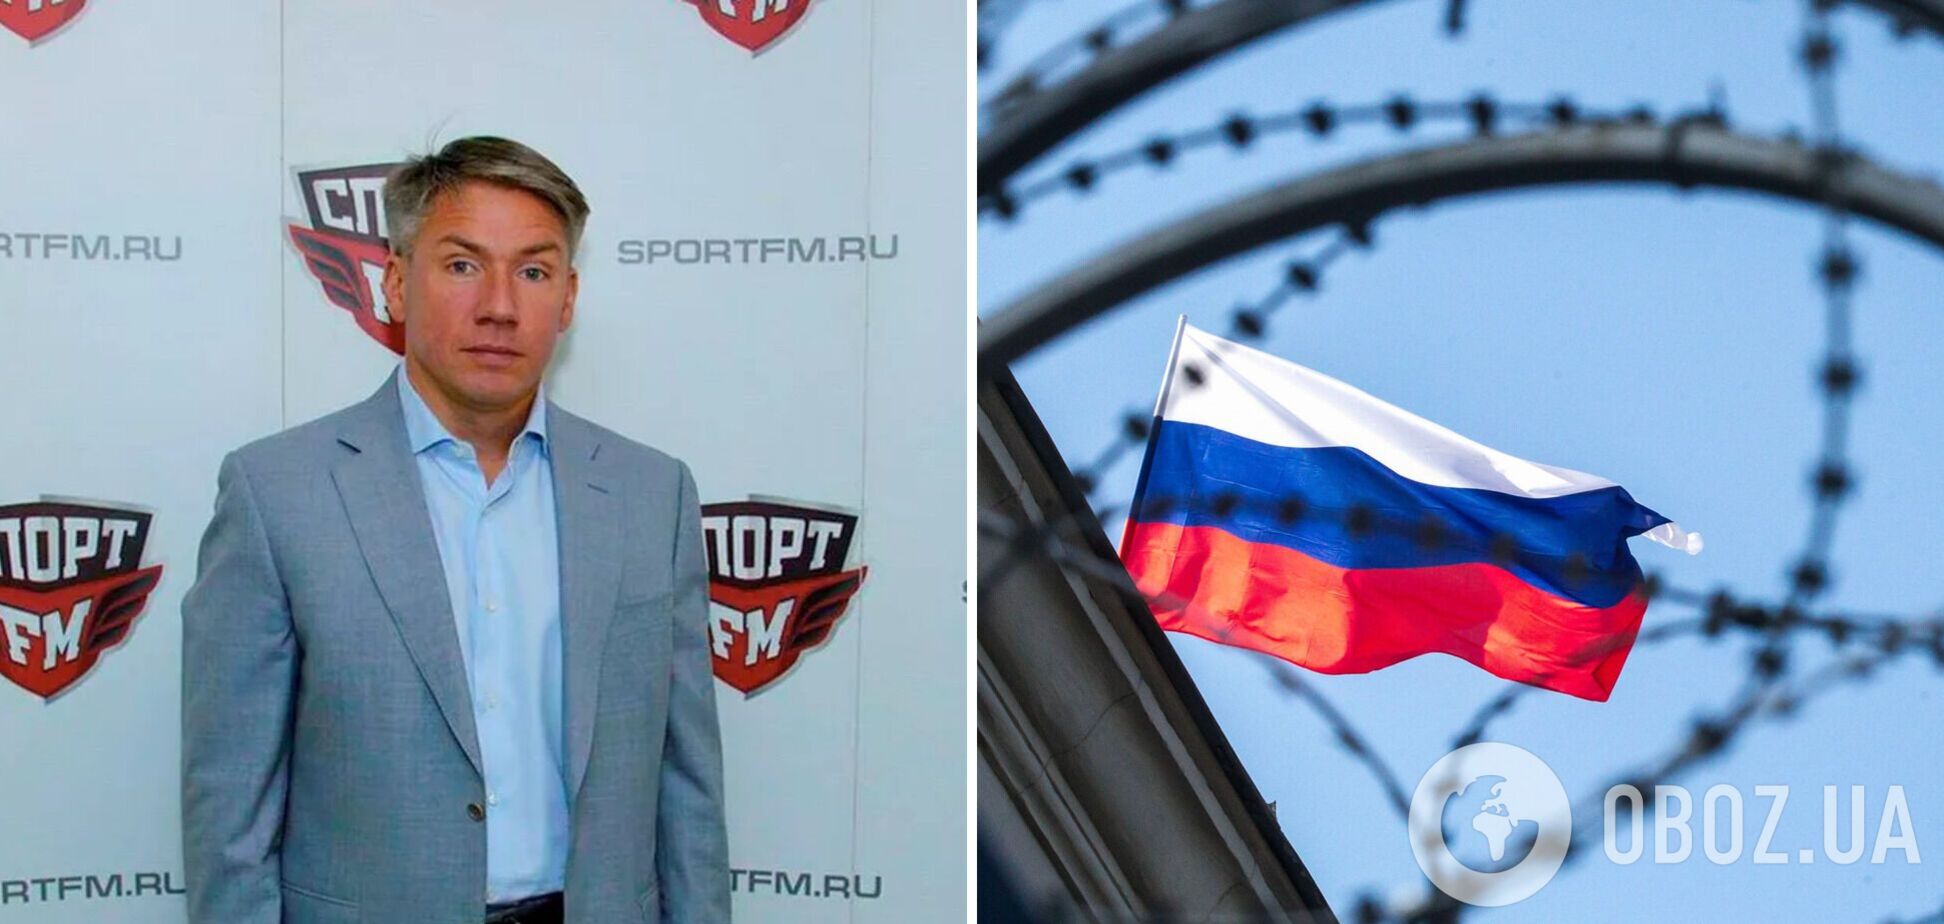 'Многополярный бункерный мир': чиновник из РФ стал посмешищем в сети из-за слов, что 'с нами не хотят играть' в футбол